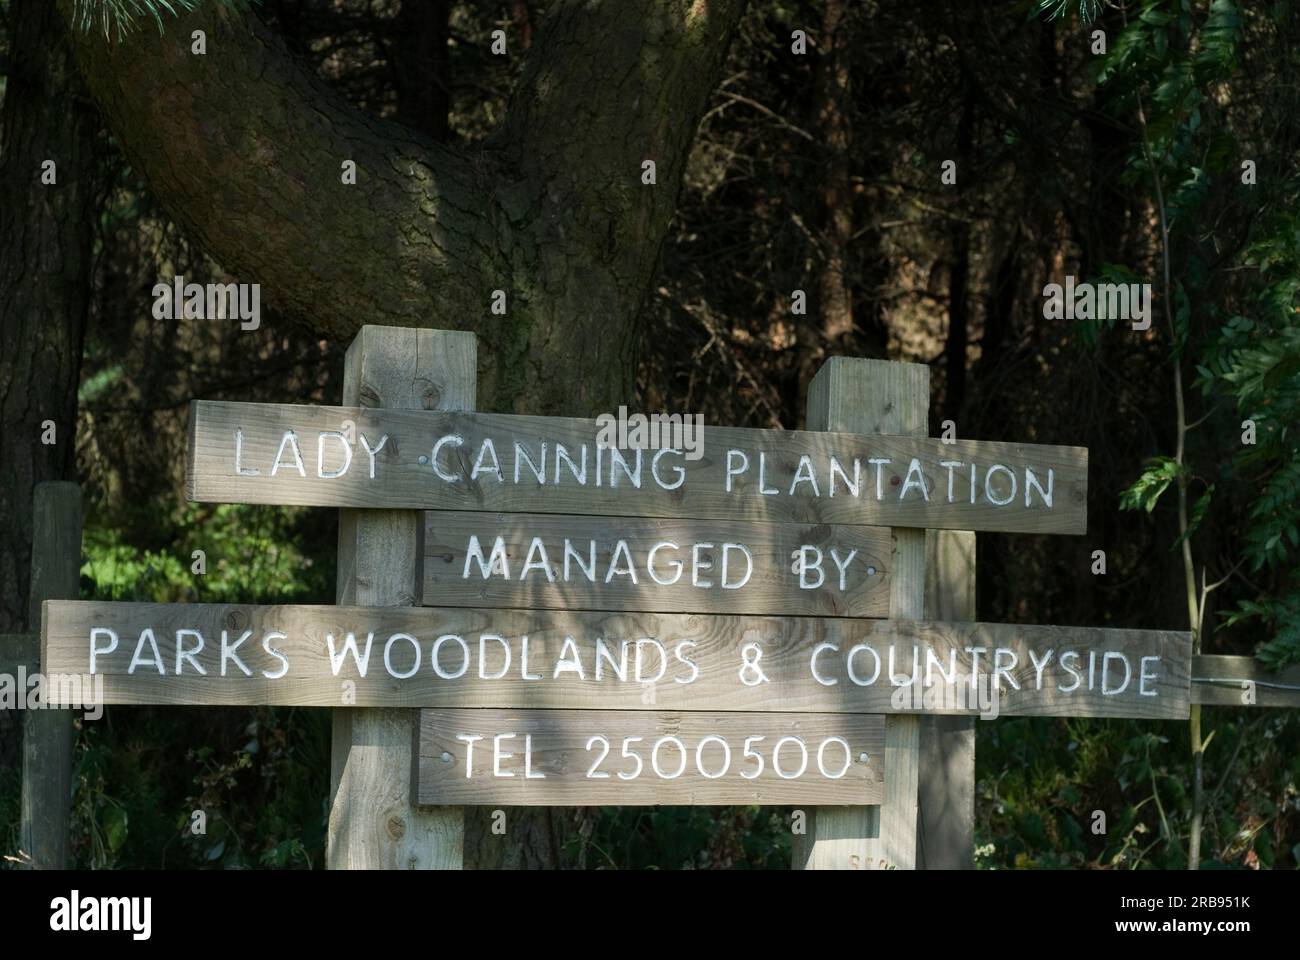 Panneau pour Lady Canning Plantation à Houndkirk Road dans le Peak District, Derbyshire, Angleterre 'Grande Bretagne' Banque D'Images